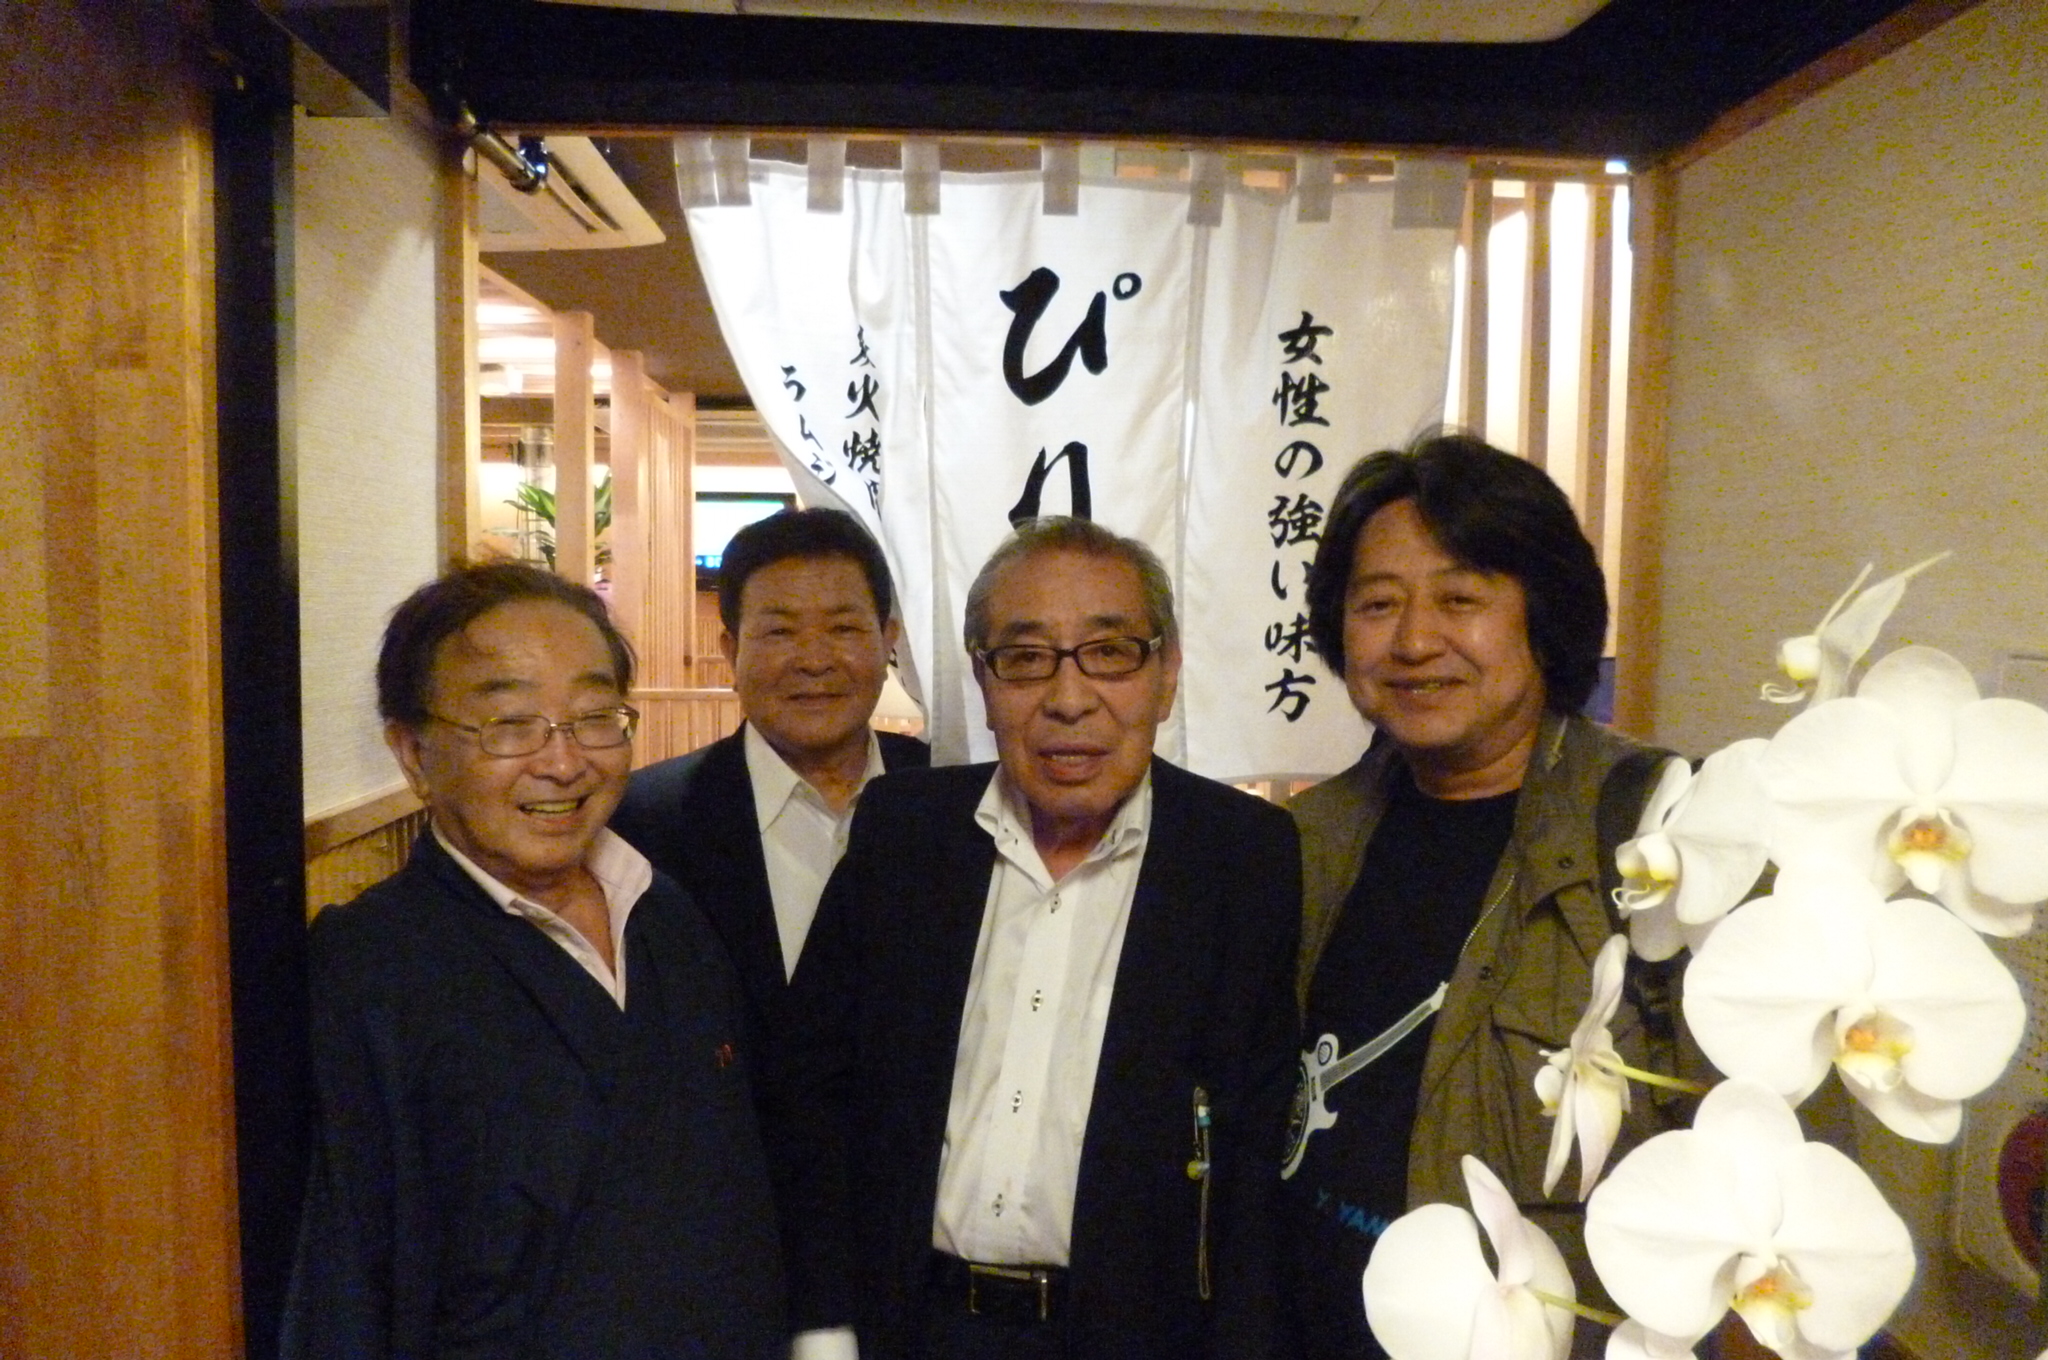 左から店のオーナー・大平さん、東京札幌会理事・金曽さん、同・渡辺会長、山木康世